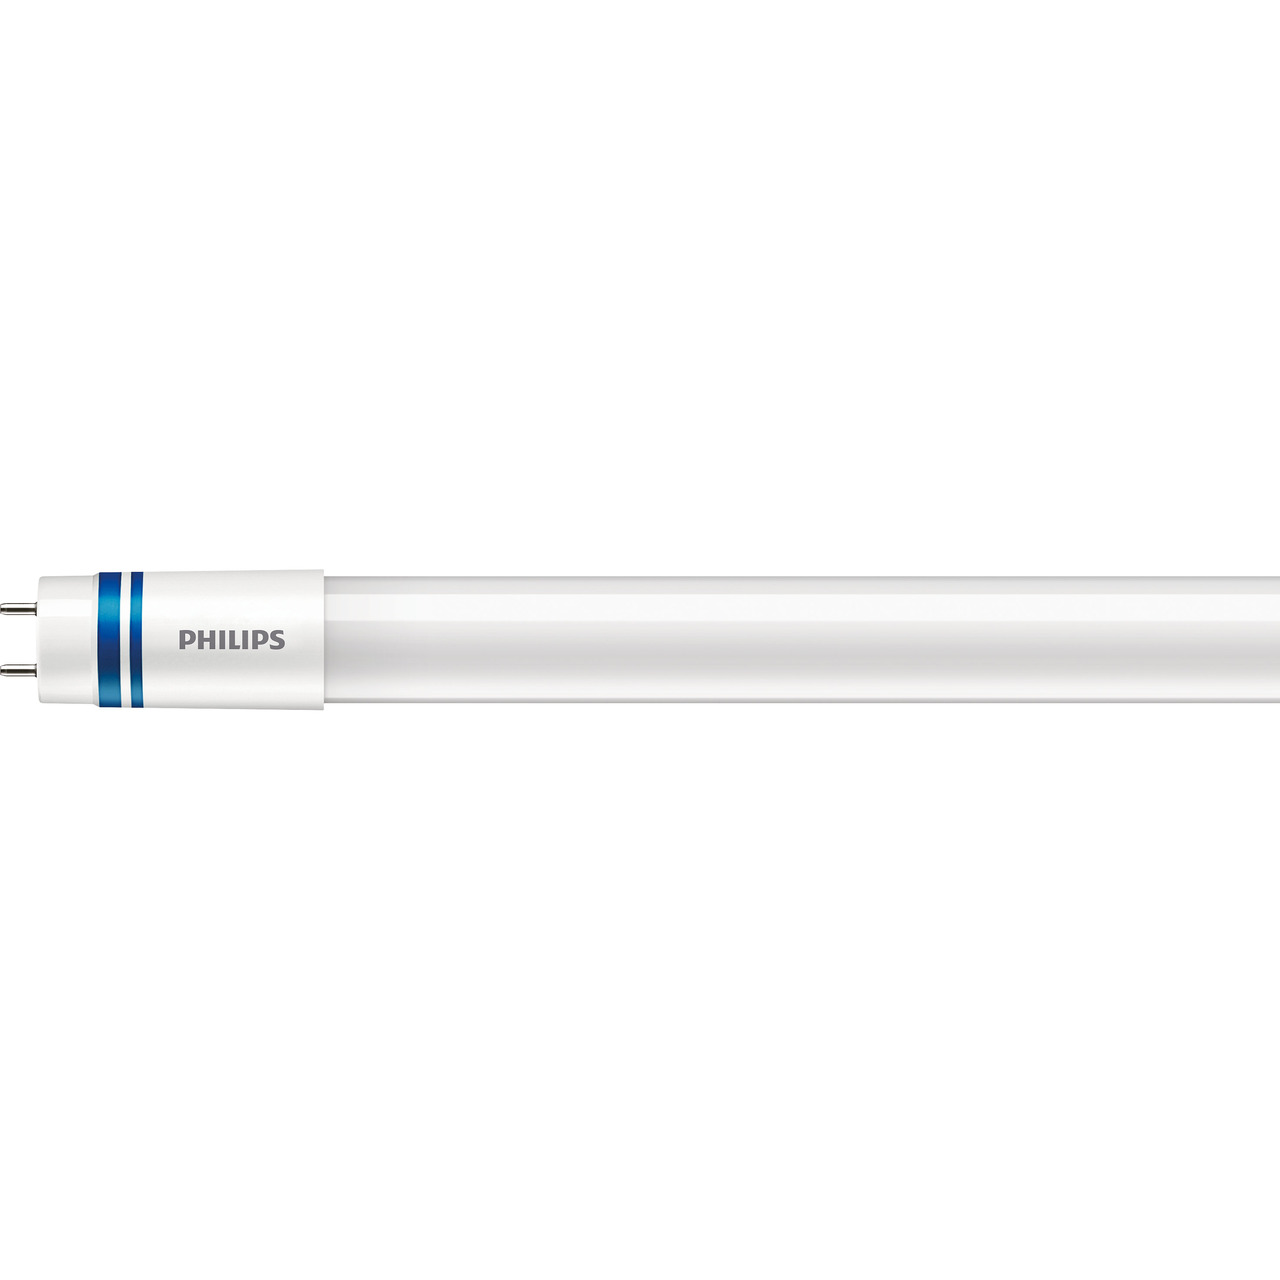 Philips 8-W-T8-LED-Röhrenlampe Master LEDtube HO InstantFit- 1050 lm- 600 mm- kaltweiss- EVG unter Beleuchtung